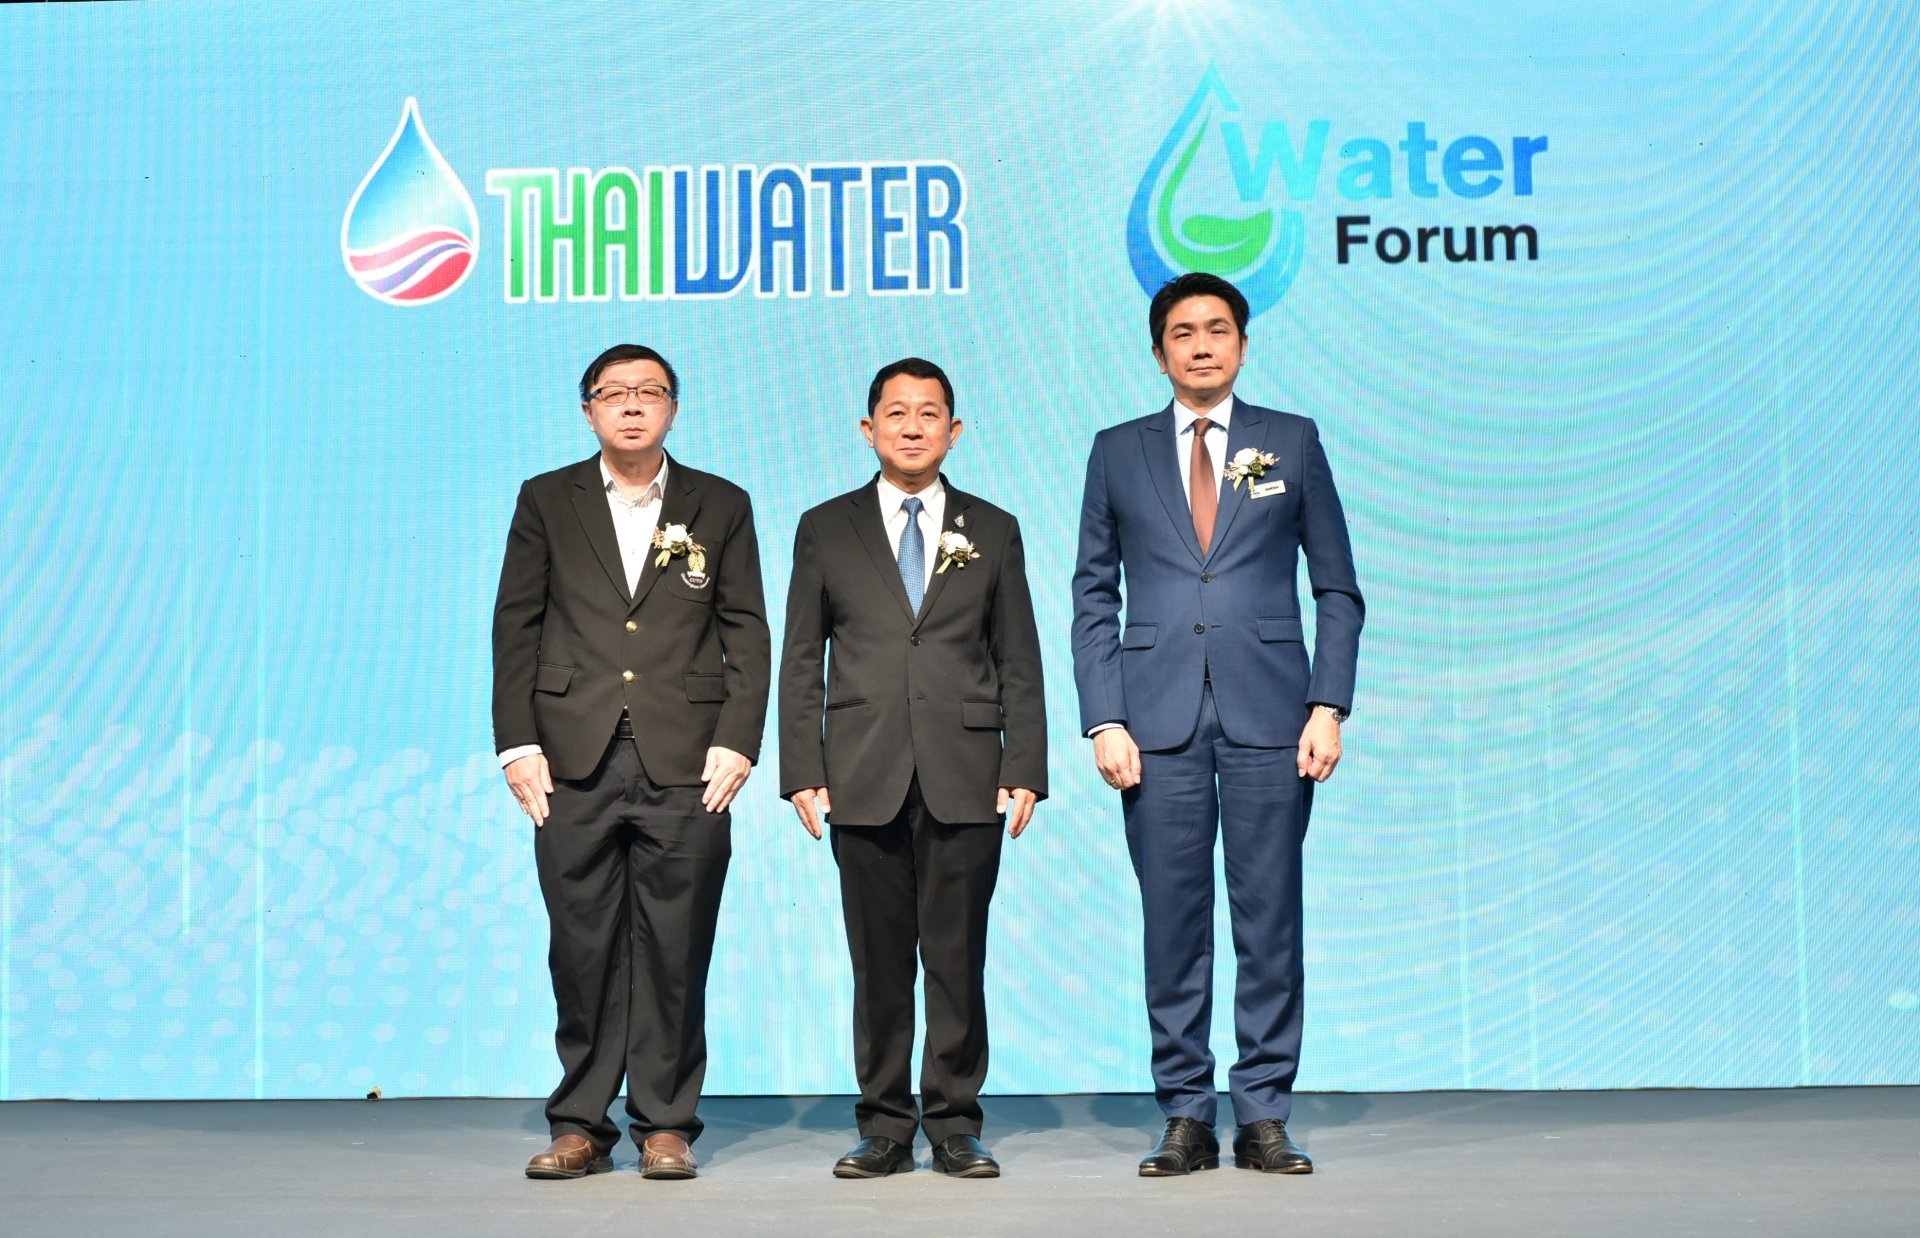 อว. ร่วมกับ จุฬาฯ และ อินฟอร์มา จัดงาน 4th Water Forum “การจัดการน้ำและน้ำเสียเพื่ออนาคตที่ยั่งยืน”